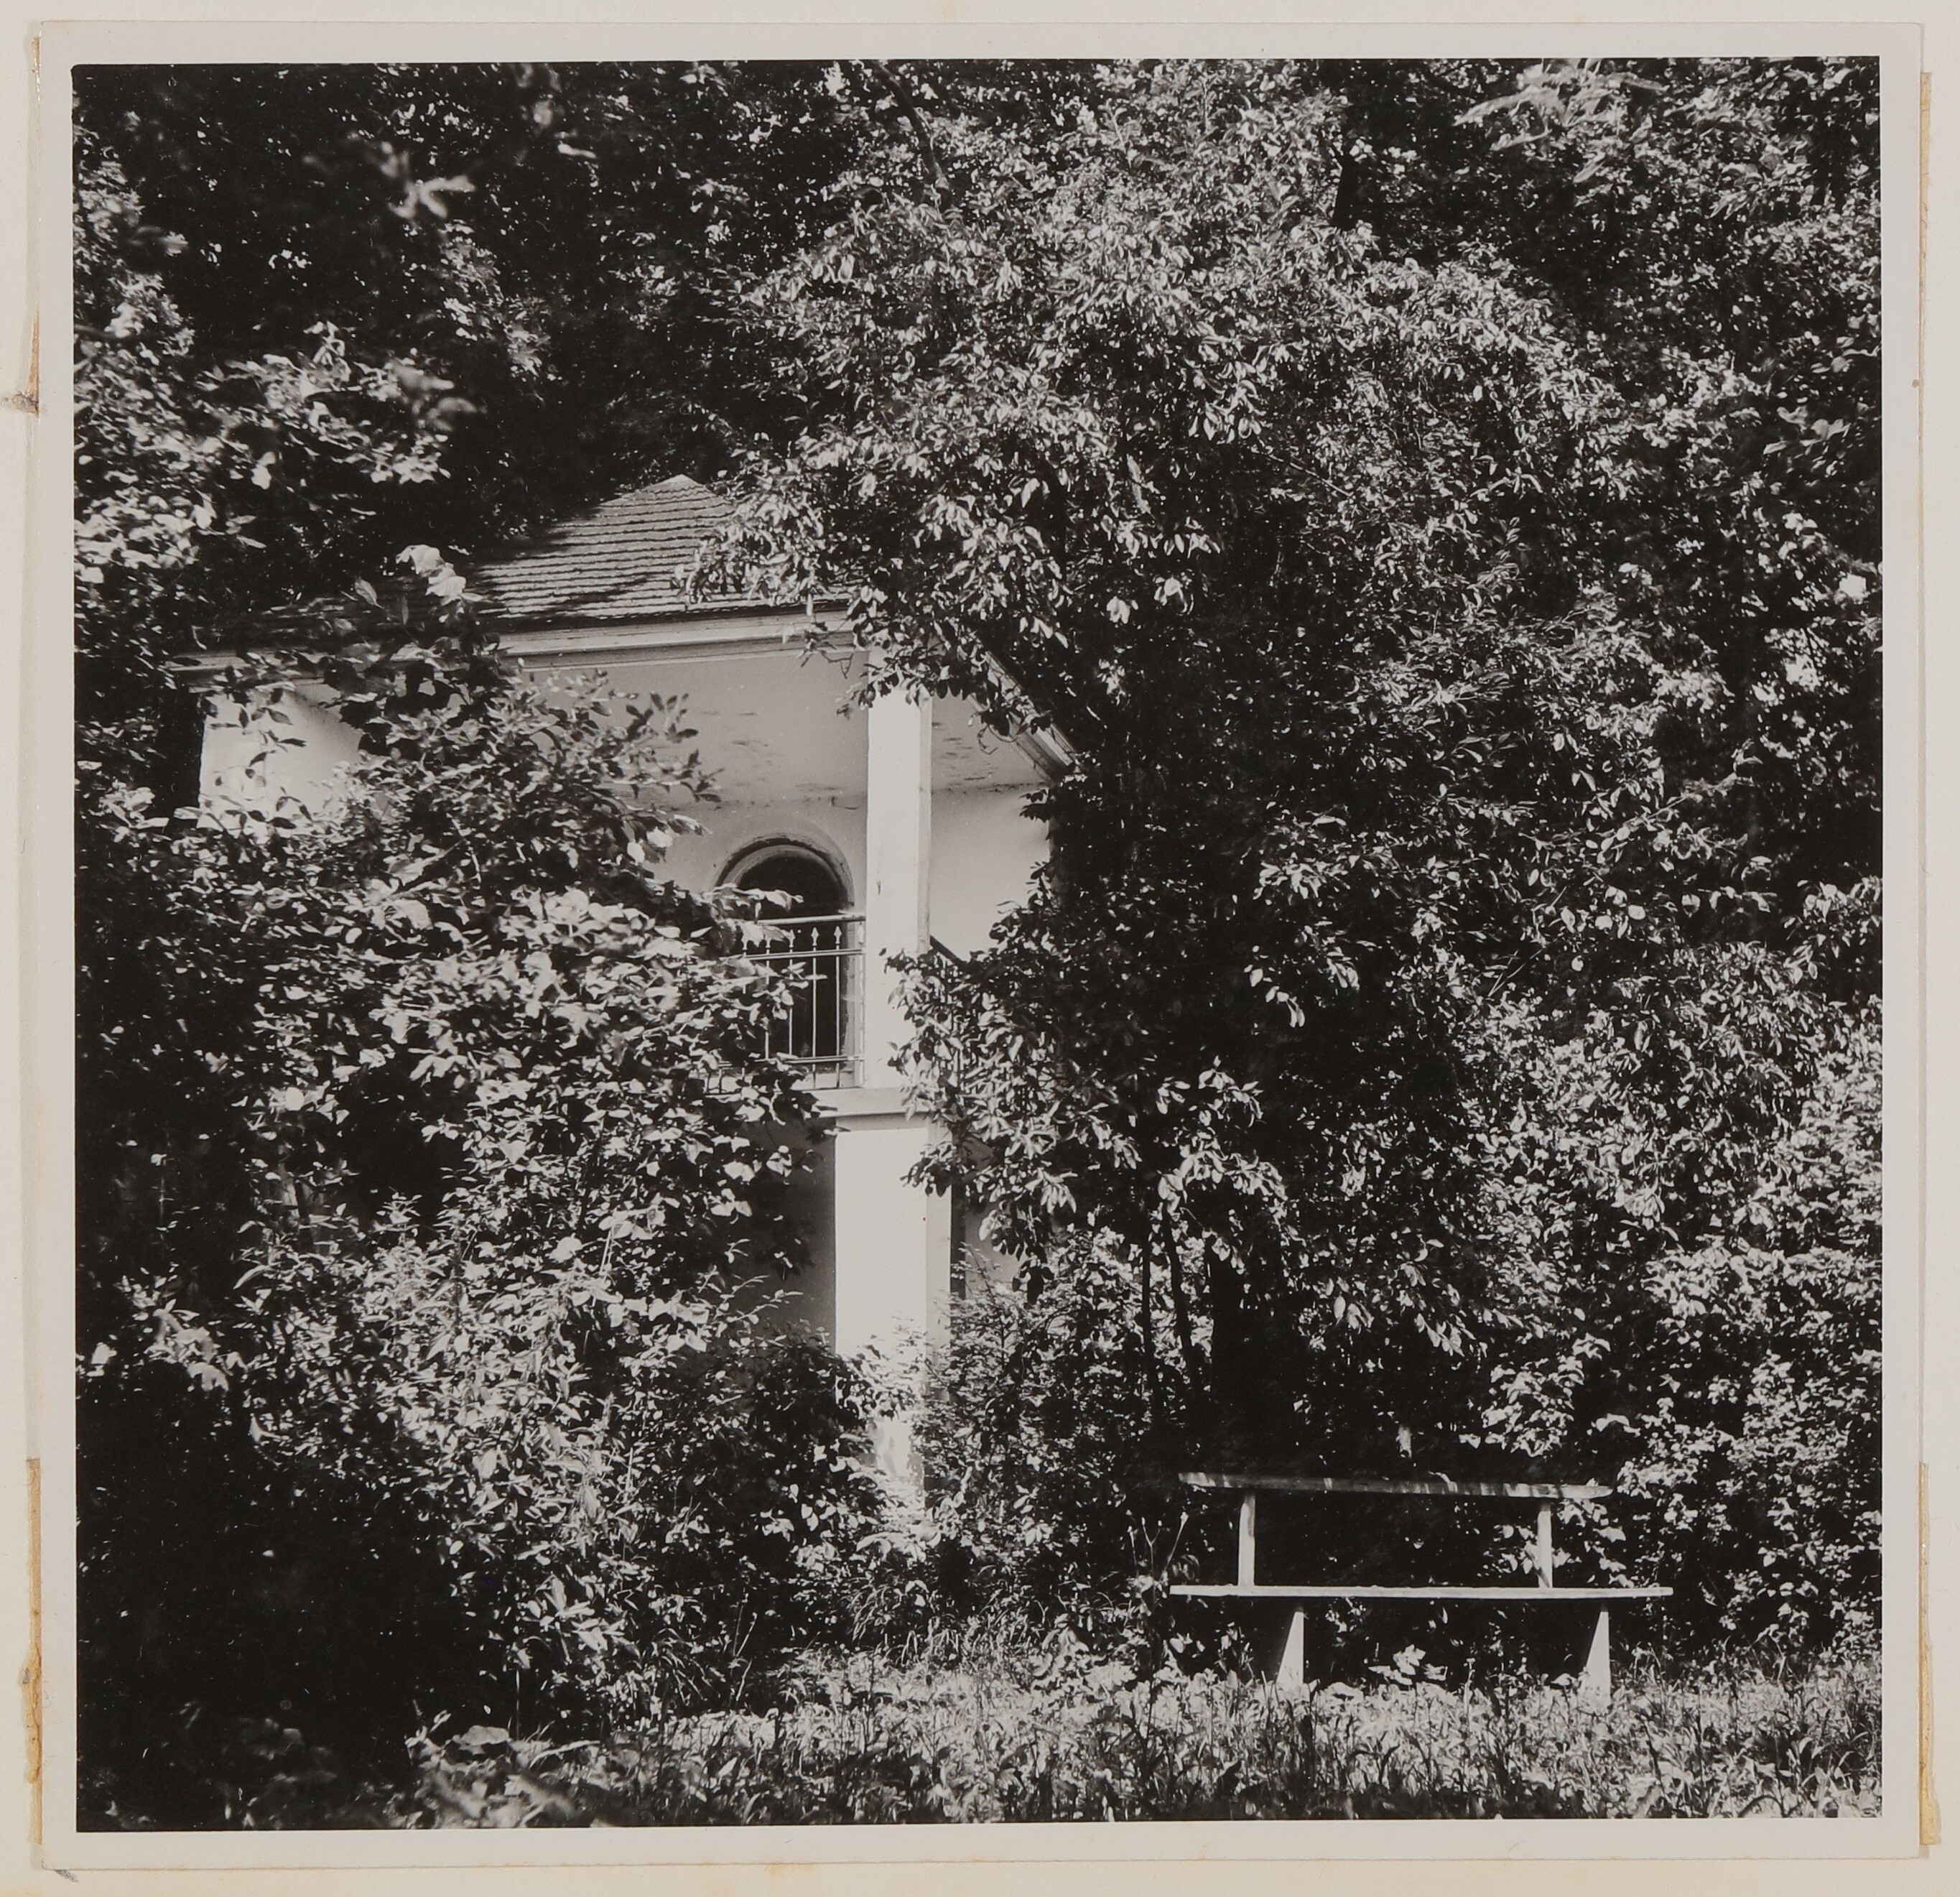 Garten von Hofmannsthals Rodauner Haus, Gartenhäuschen mit Bäumen und Sträuchern (Freies Deutsches Hochstift / Frankfurter Goethe-Museum CC BY-NC-SA)